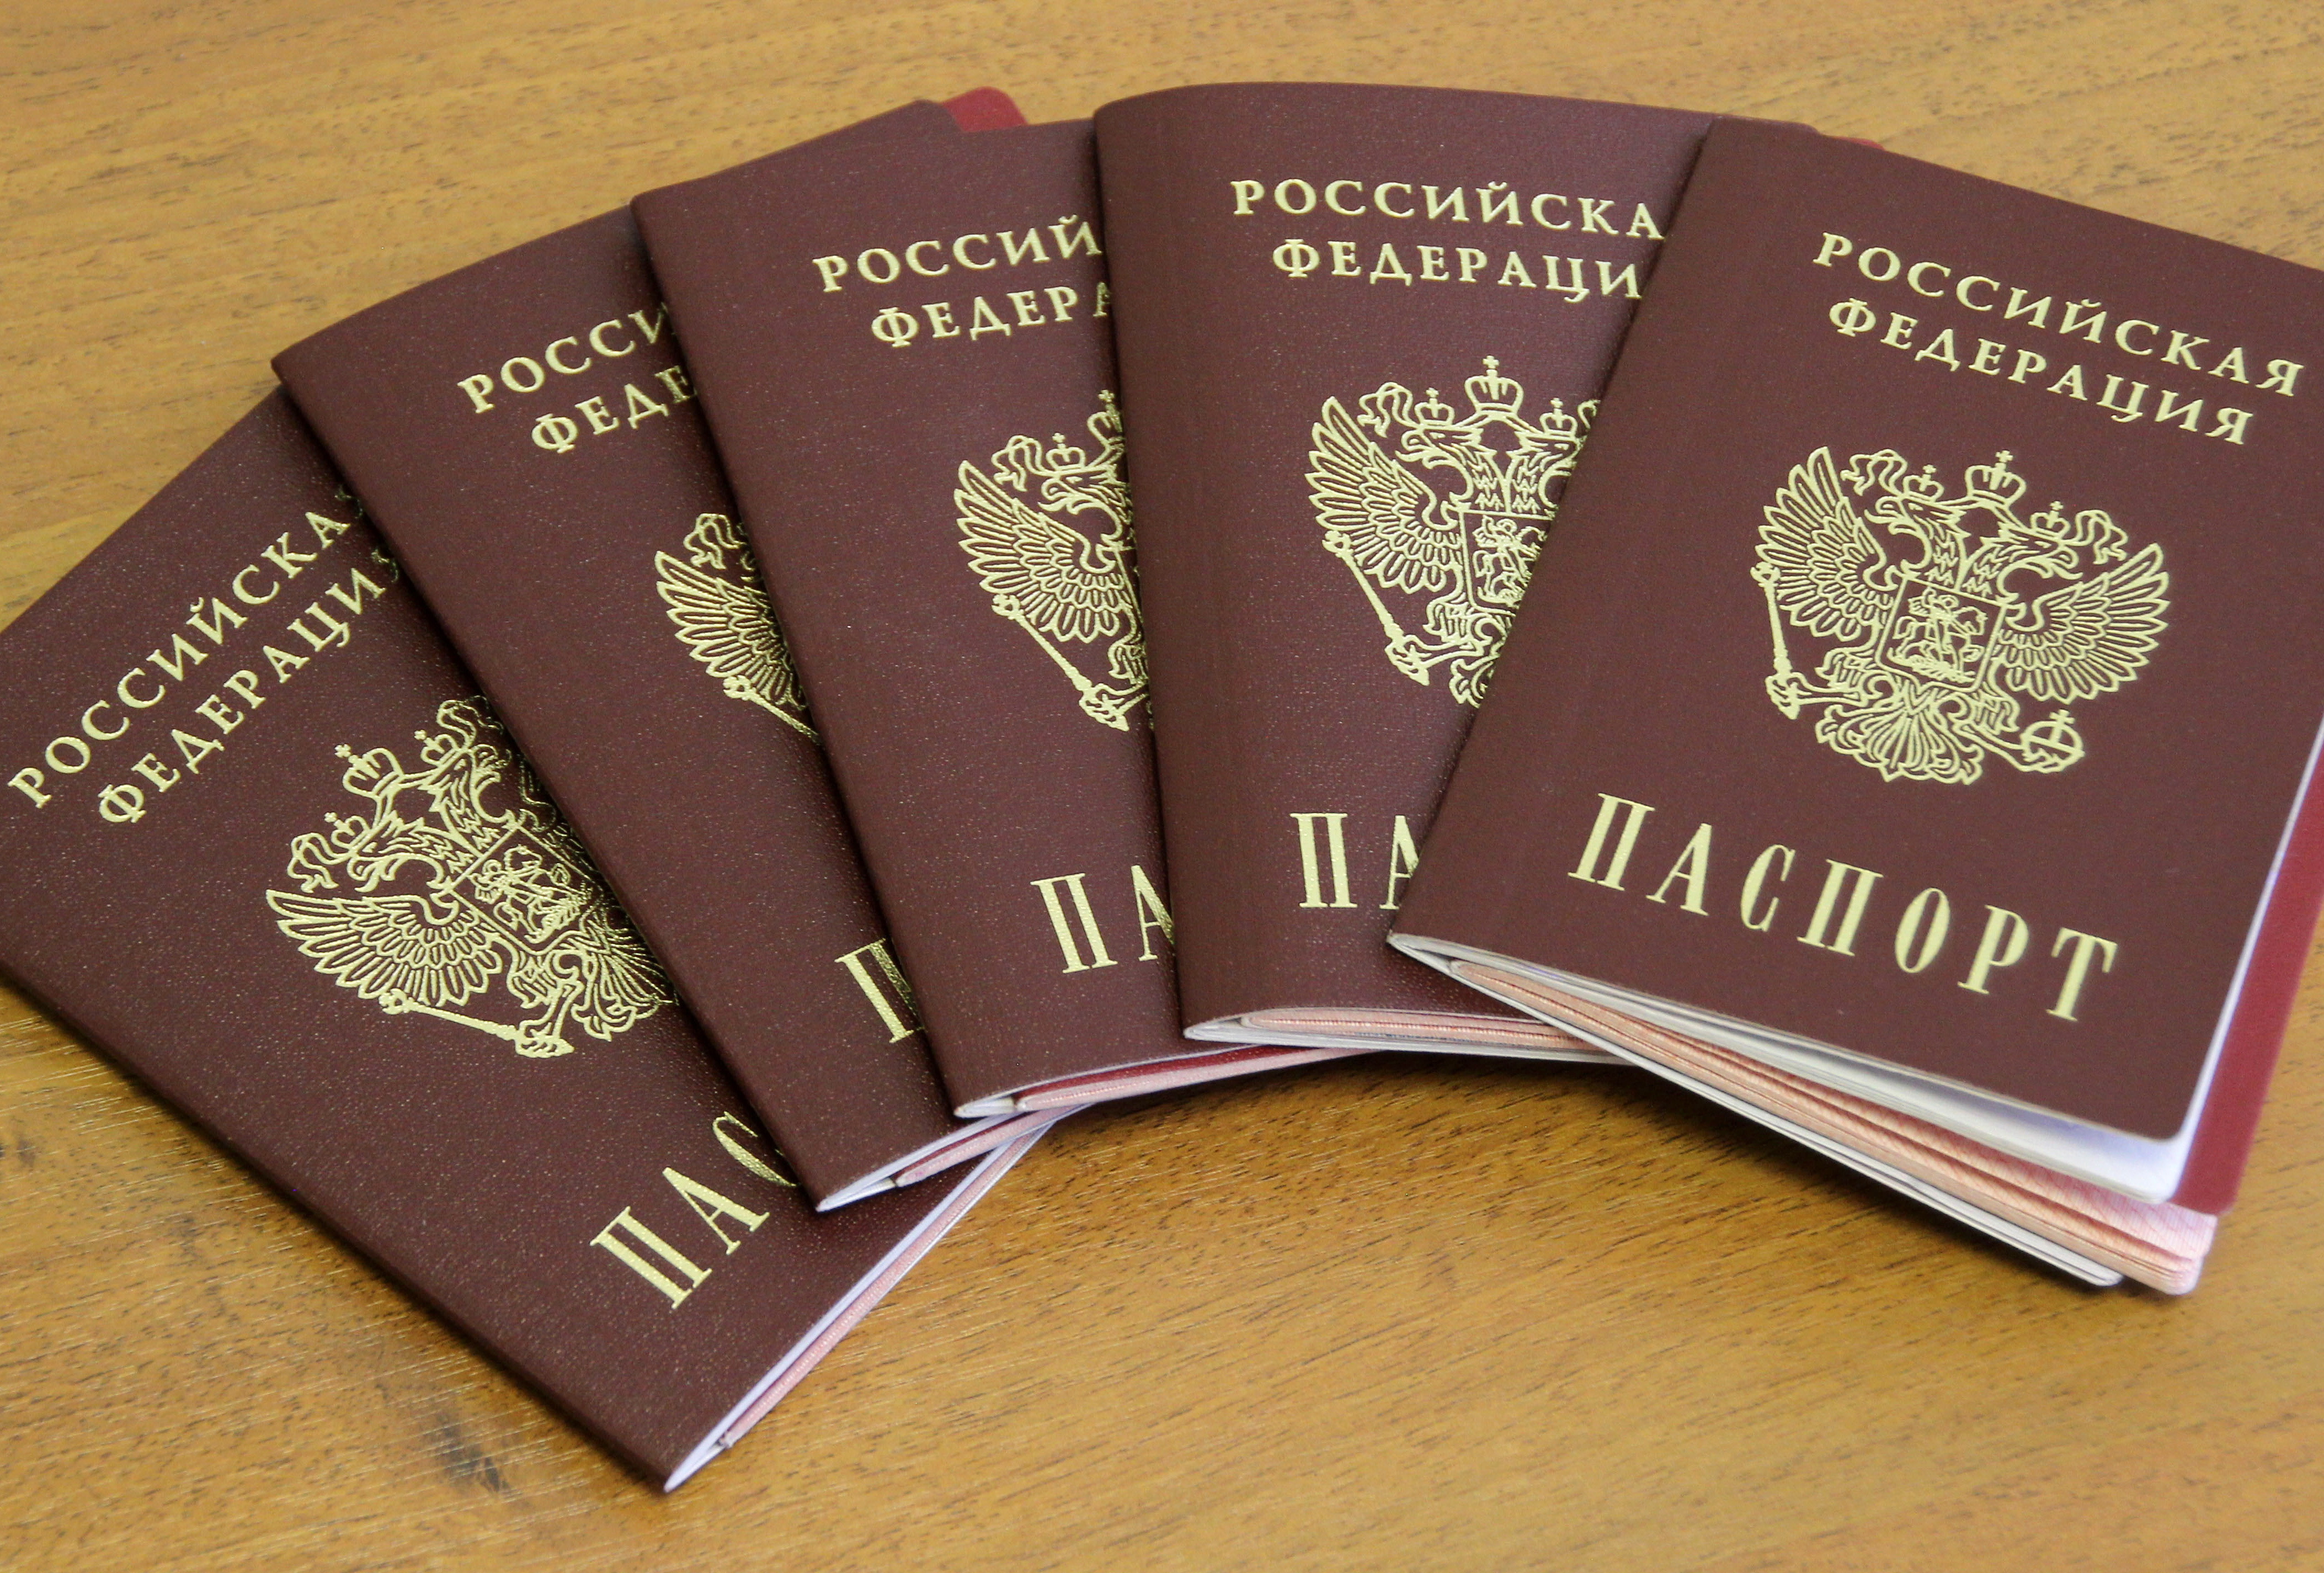 Պուտինը Պետդումա է ուղարկել ՌԴ քաղաքացիություն ստանալը պարզեցնող օրենք